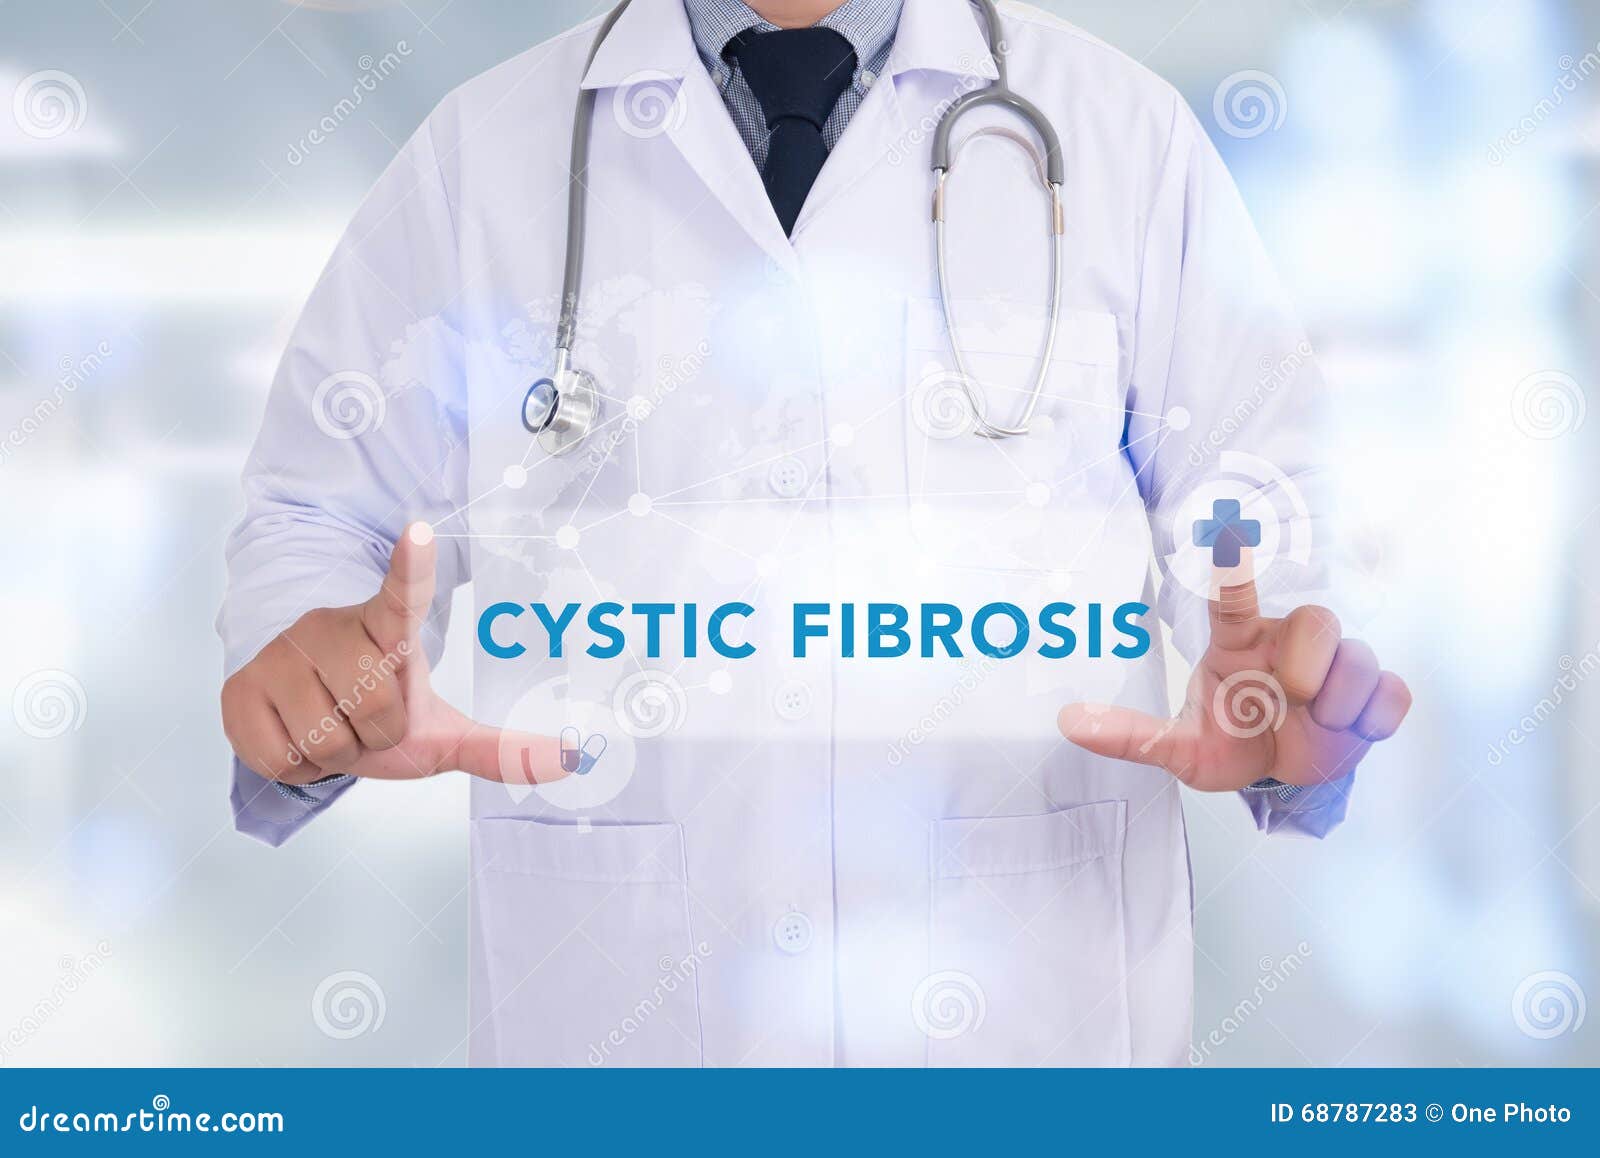 cystic fibrosis concept